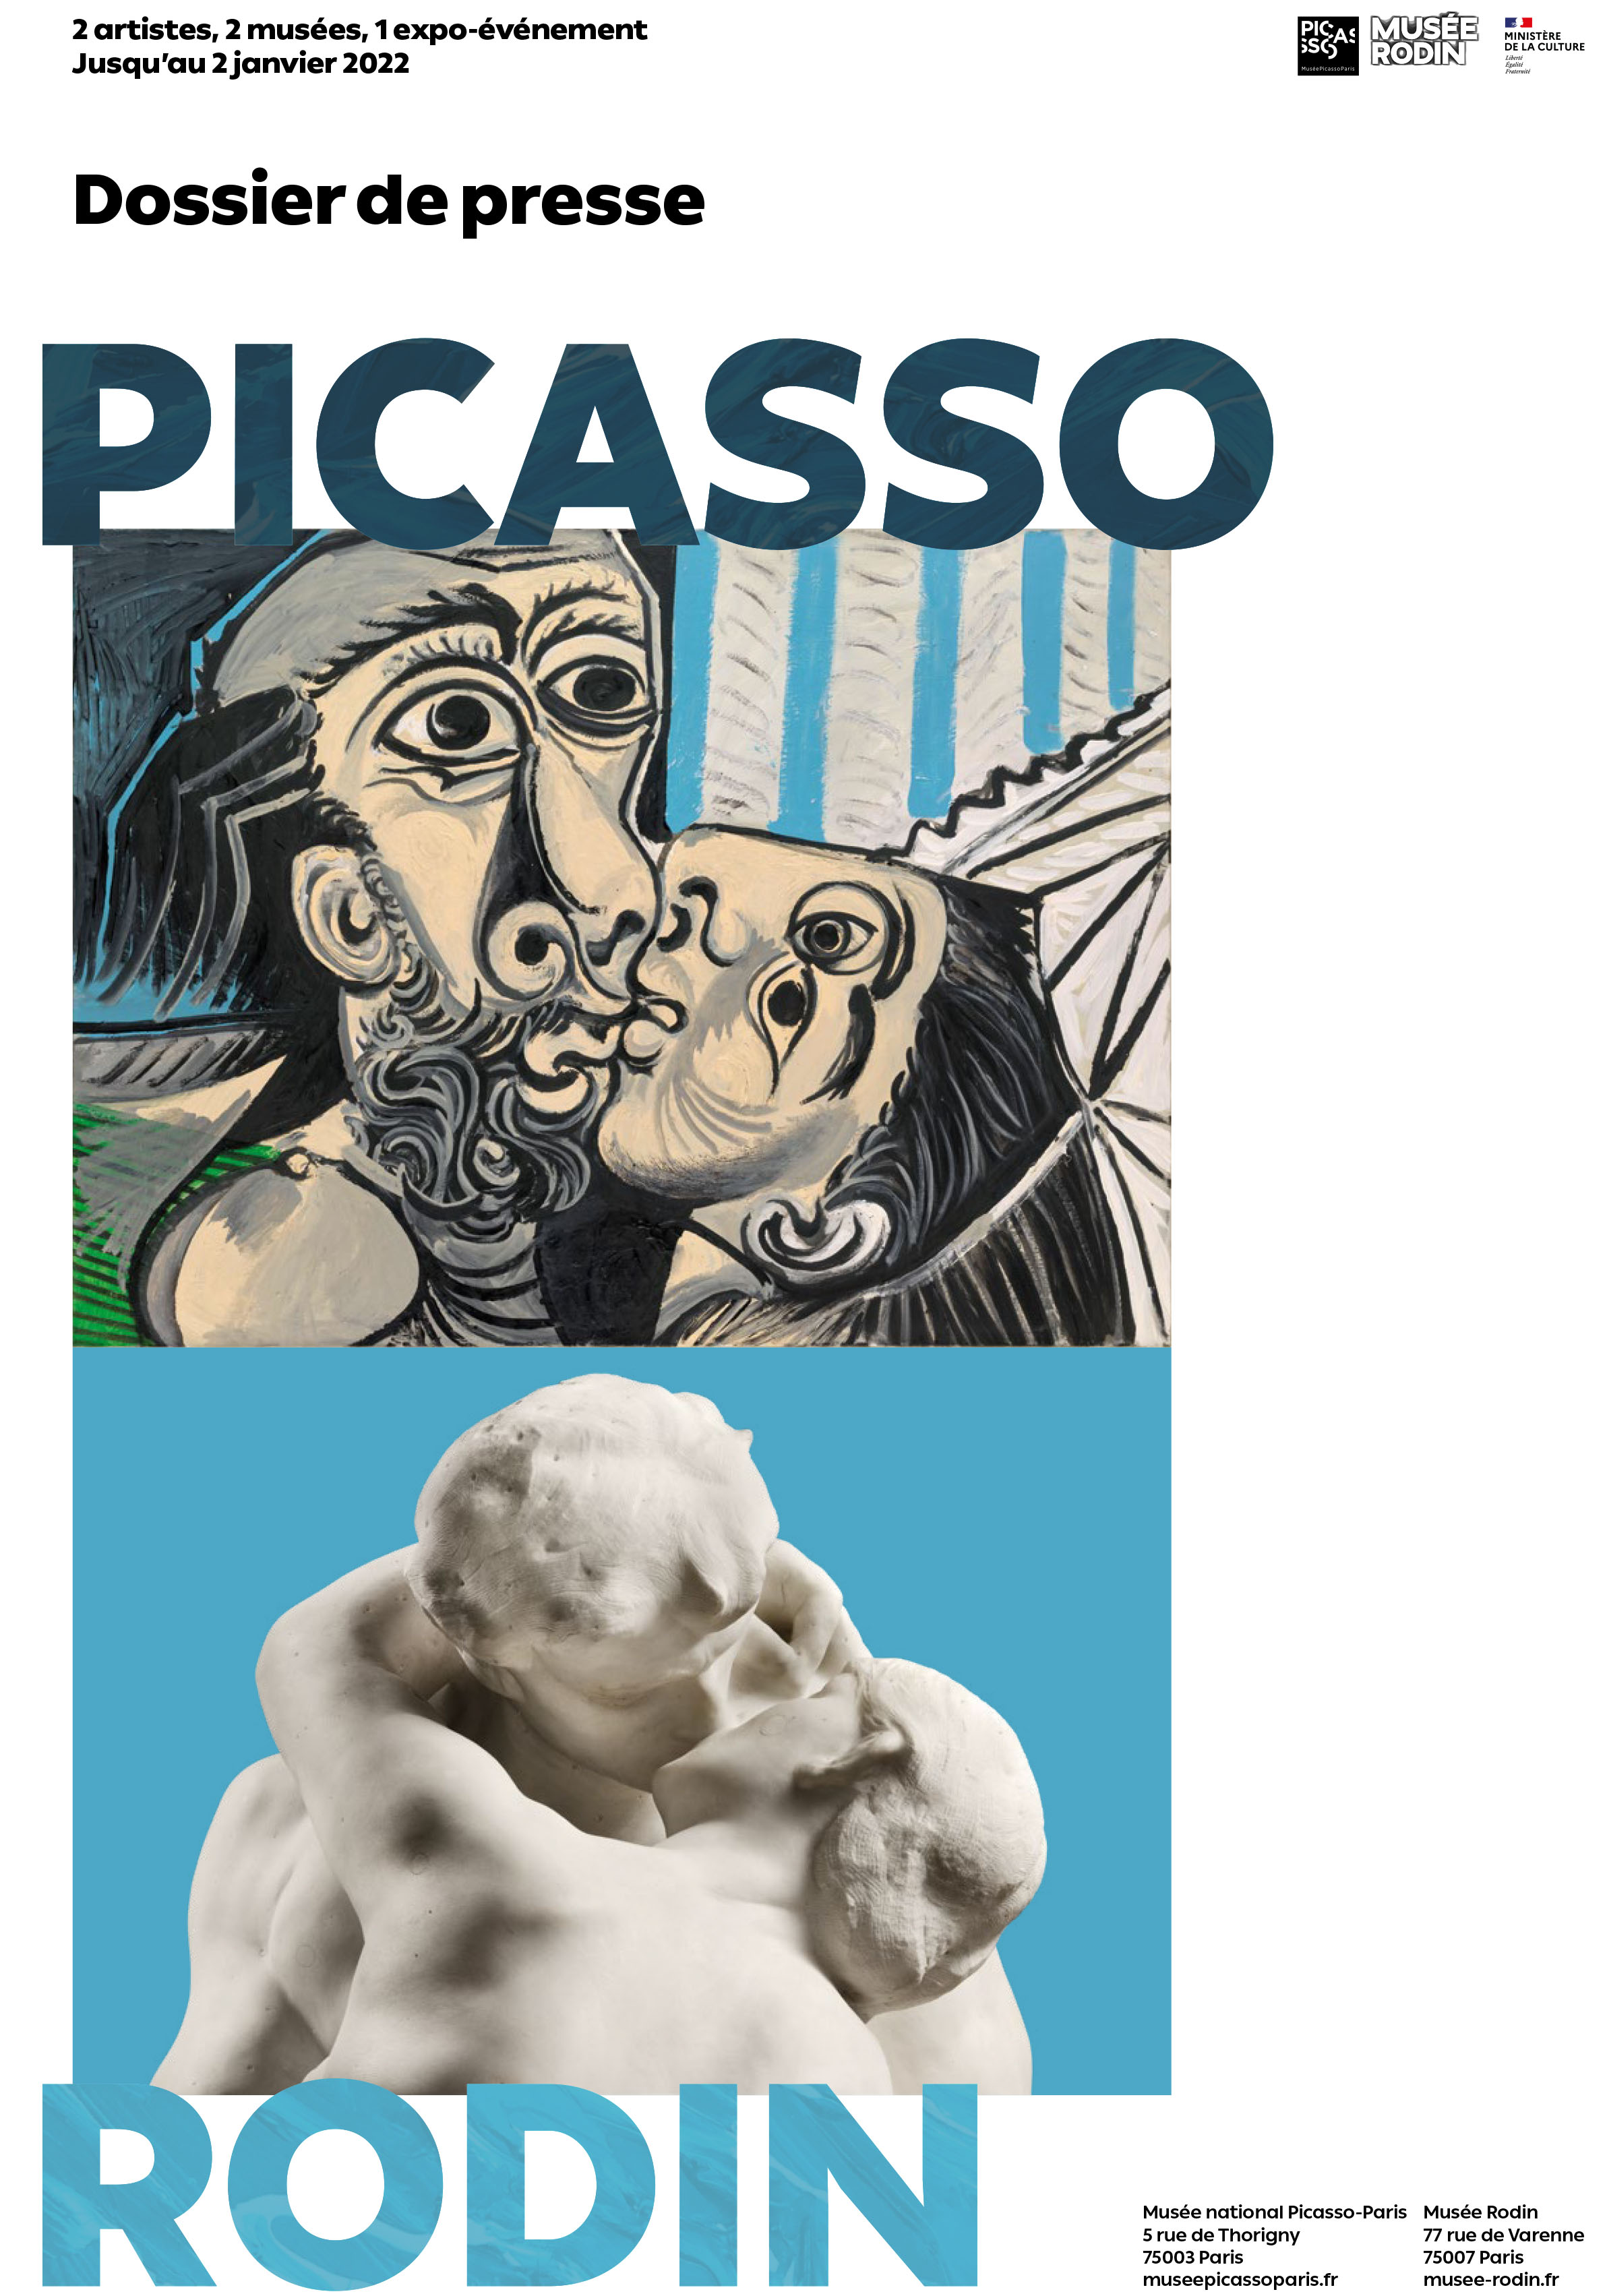 Dossier de presse "Picasso-Rodin" 